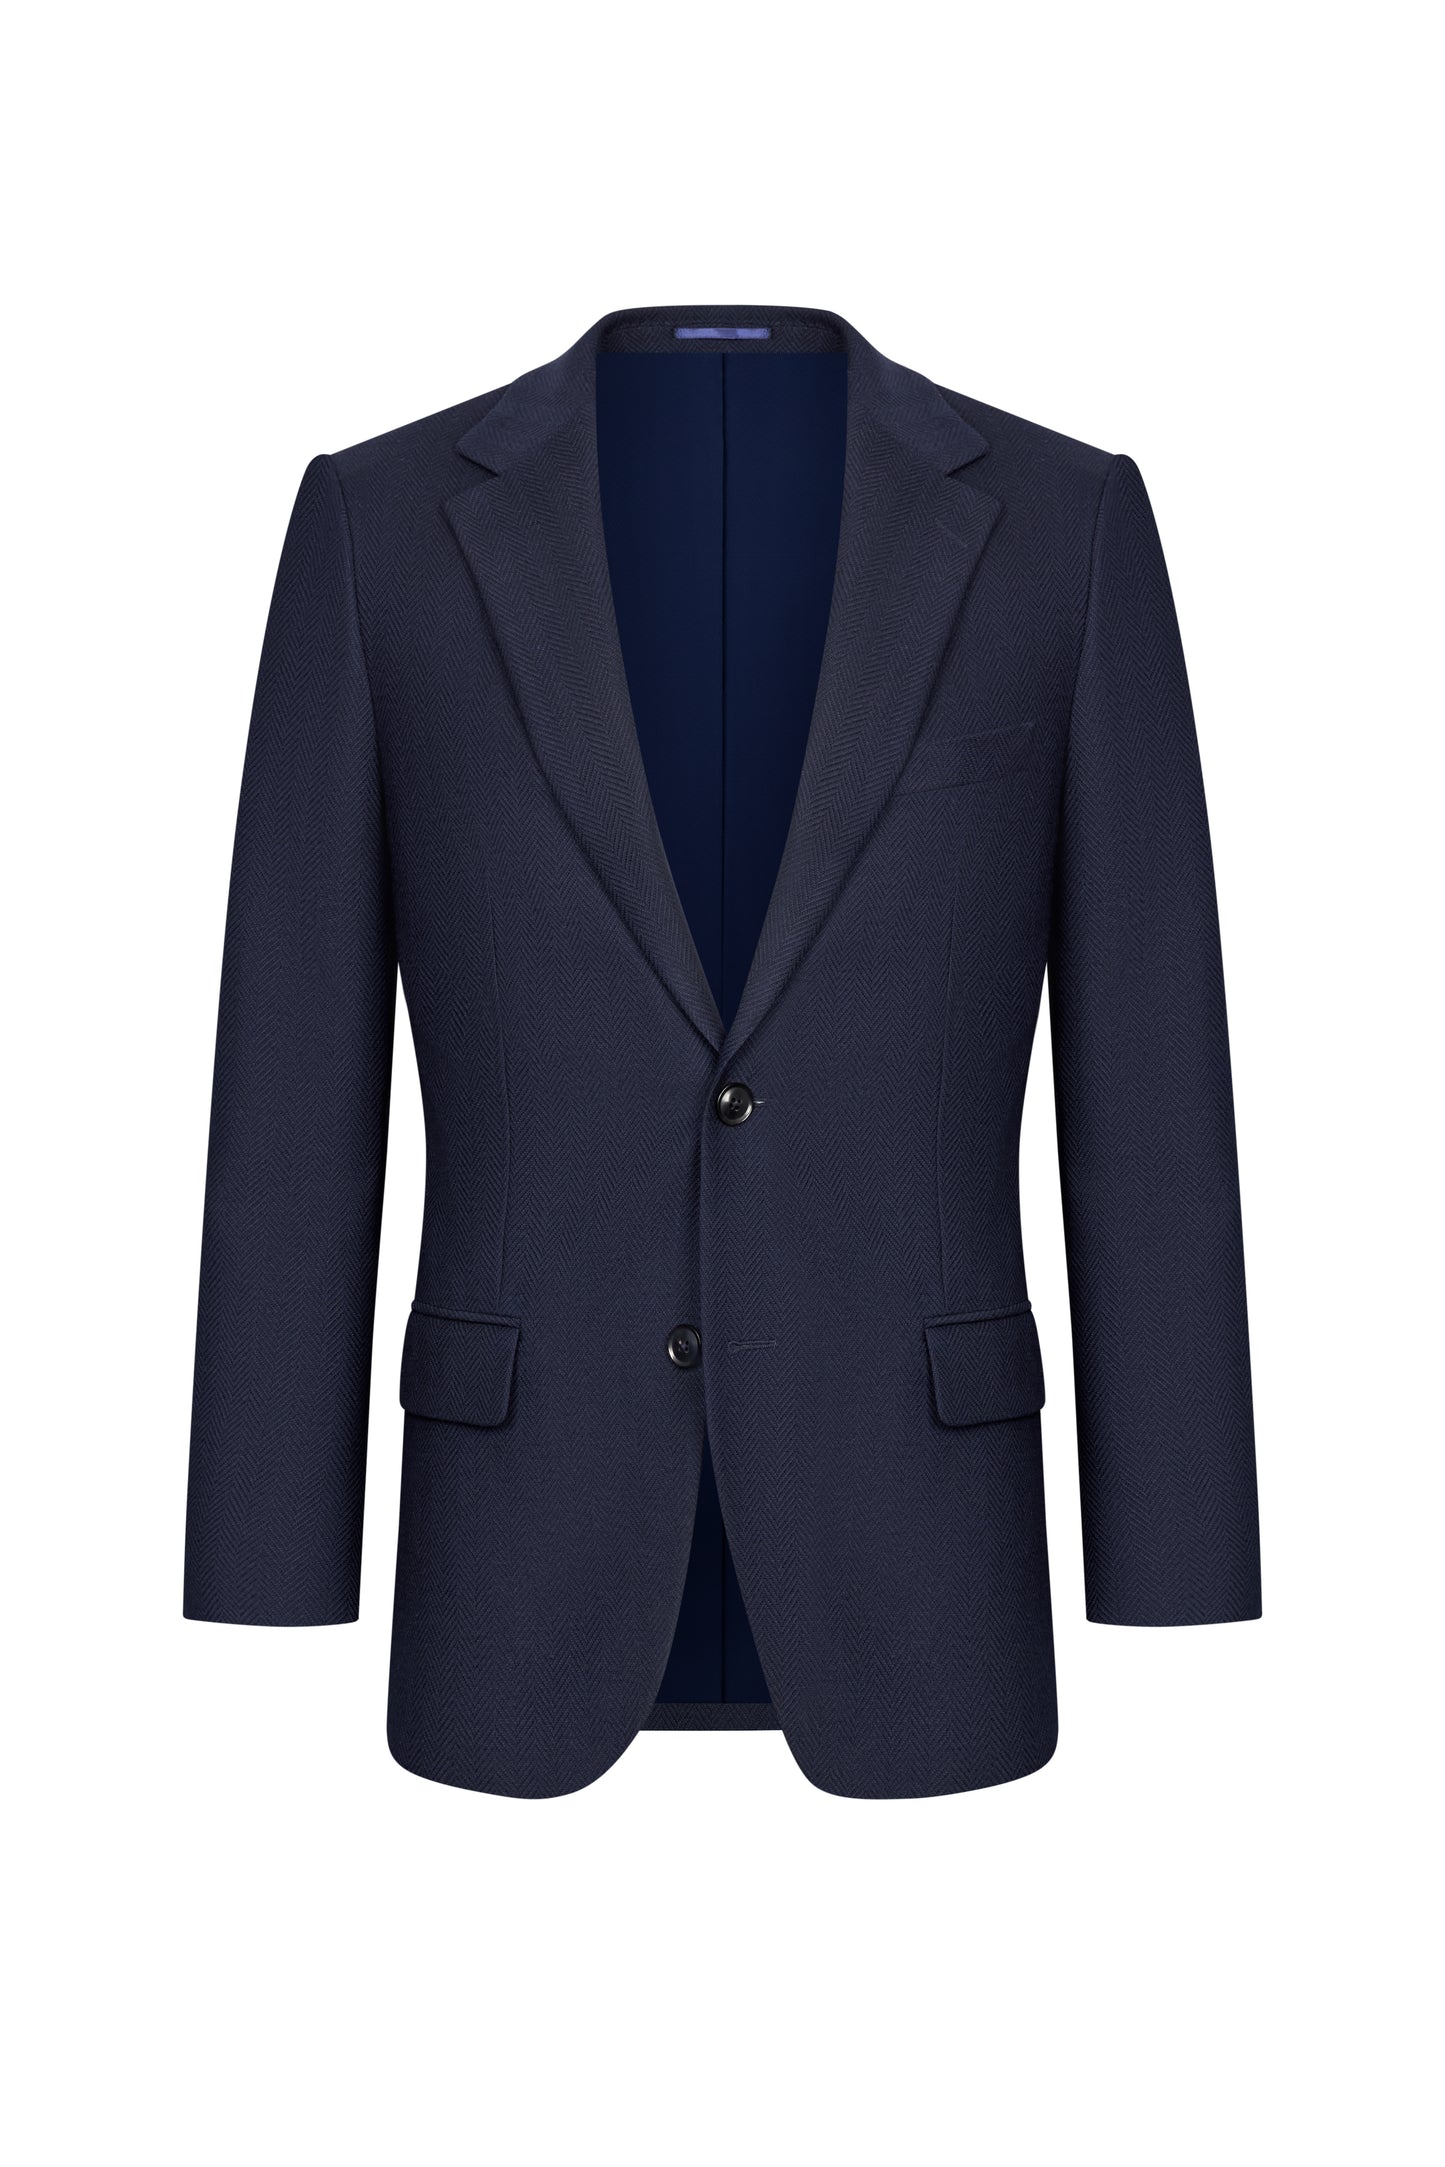 Midnight Blue Herringbone Custom Jacket